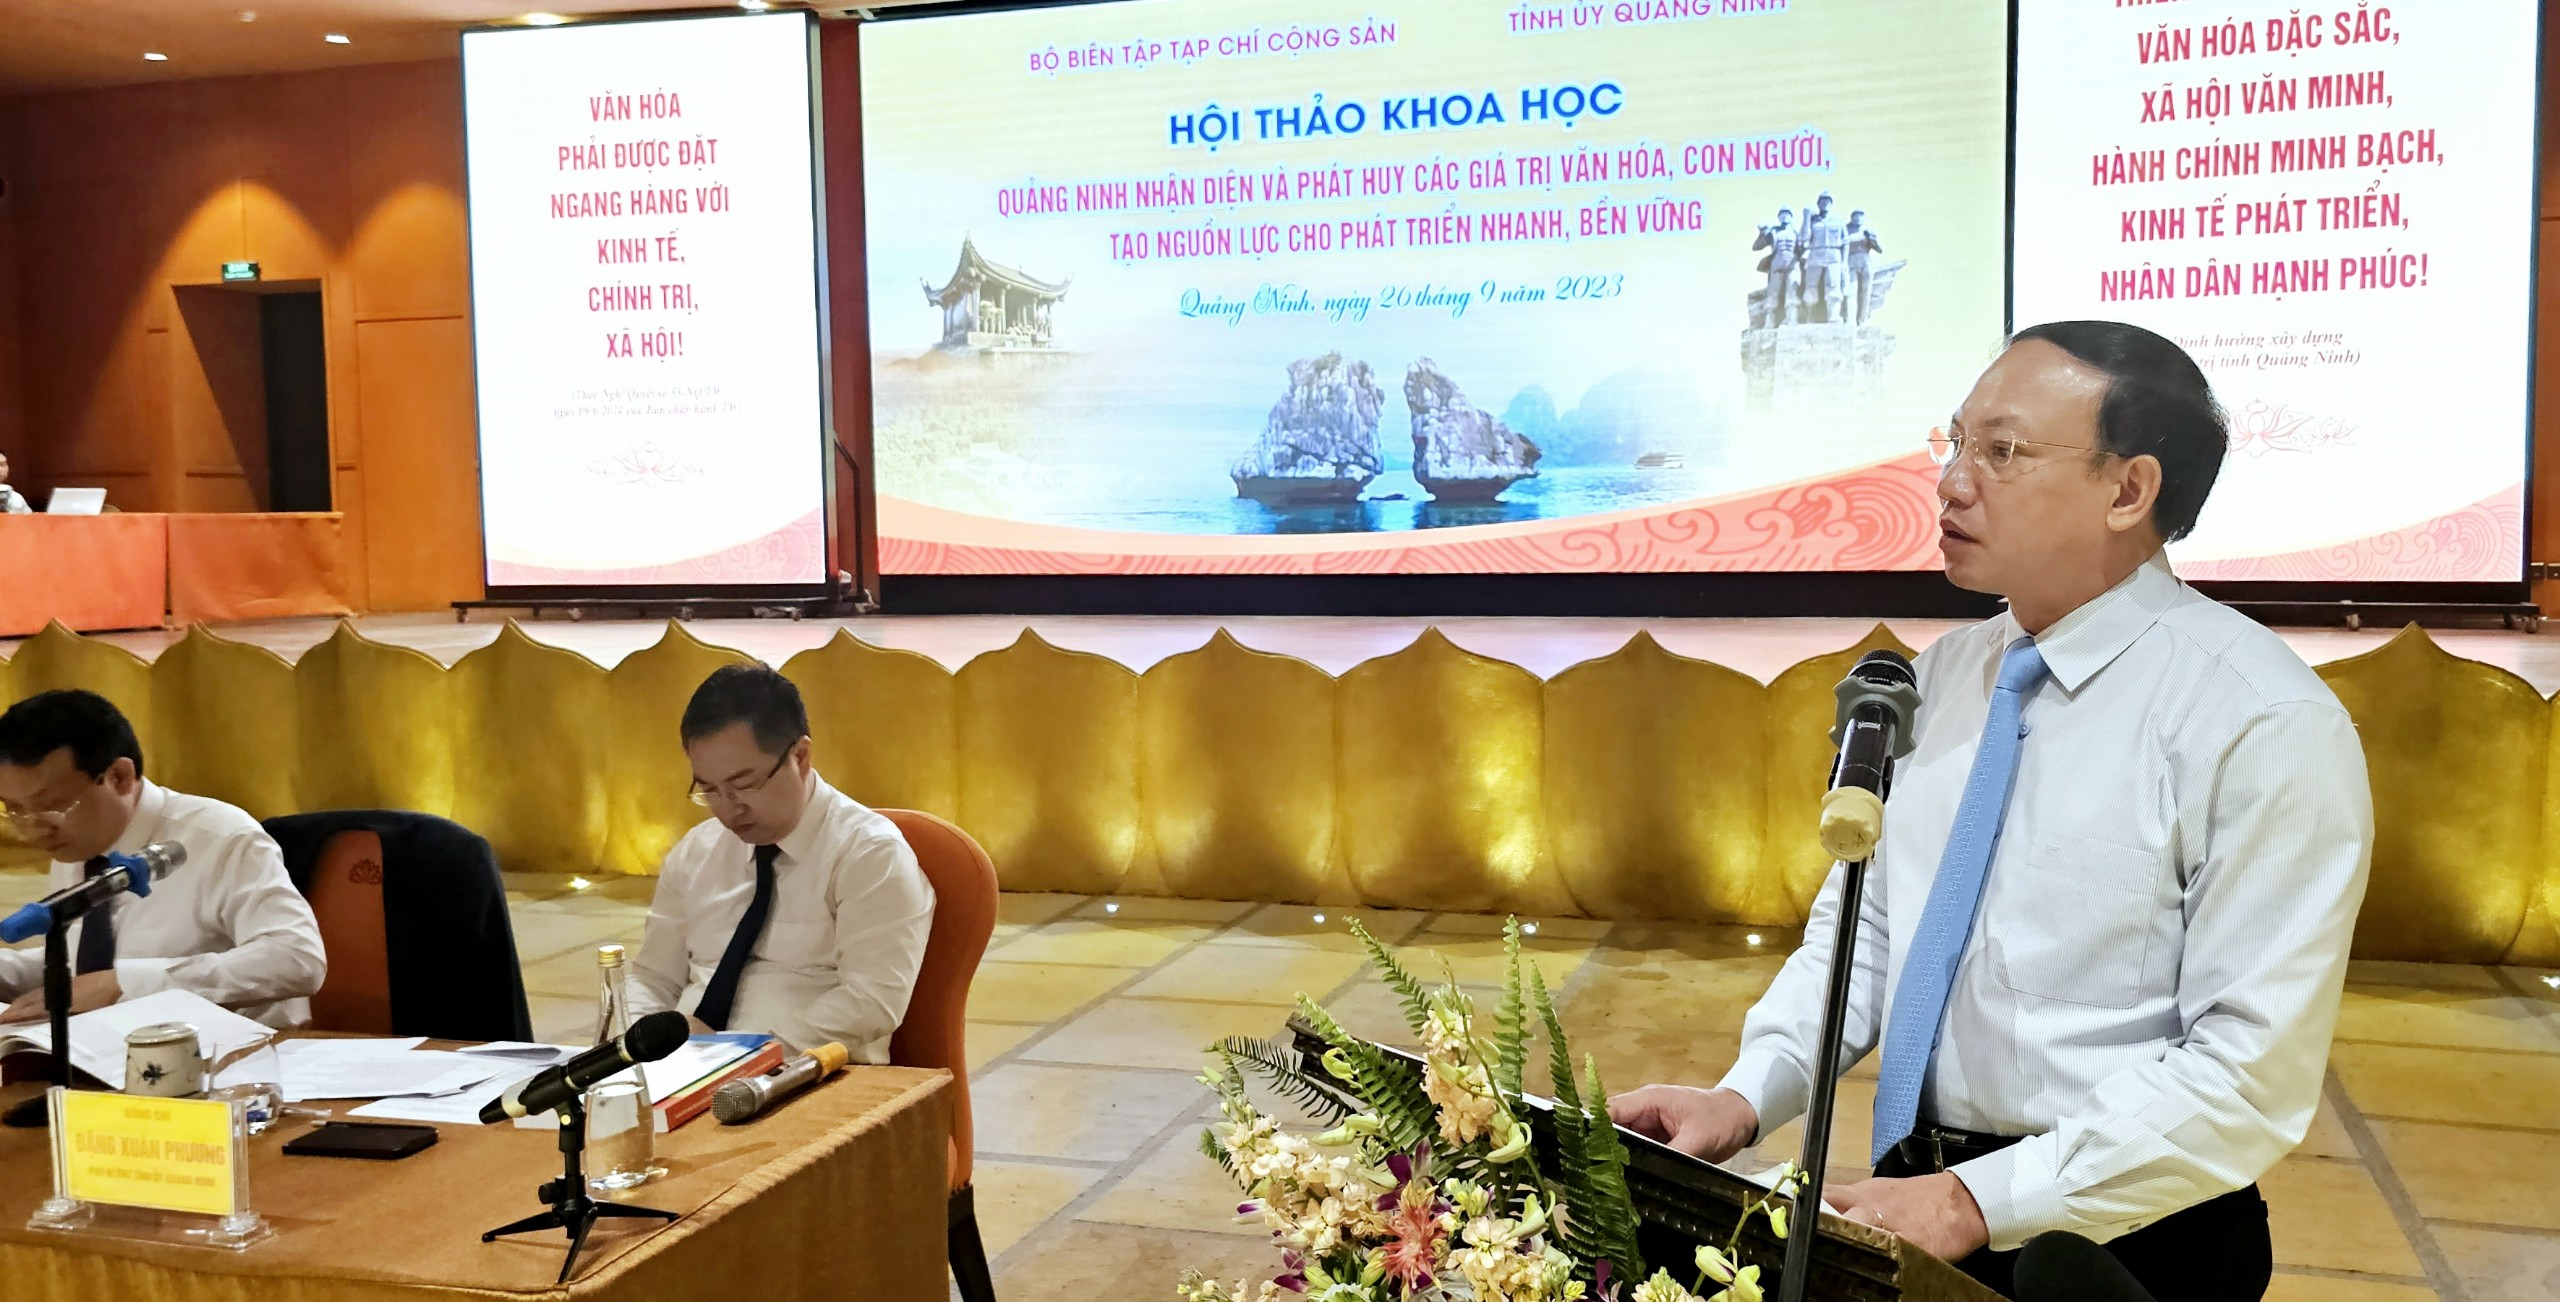 Bí thư Tỉnh ủy Quảng Ninh Nguyễn Xuân Ký phát biểu tại Hội thảo.